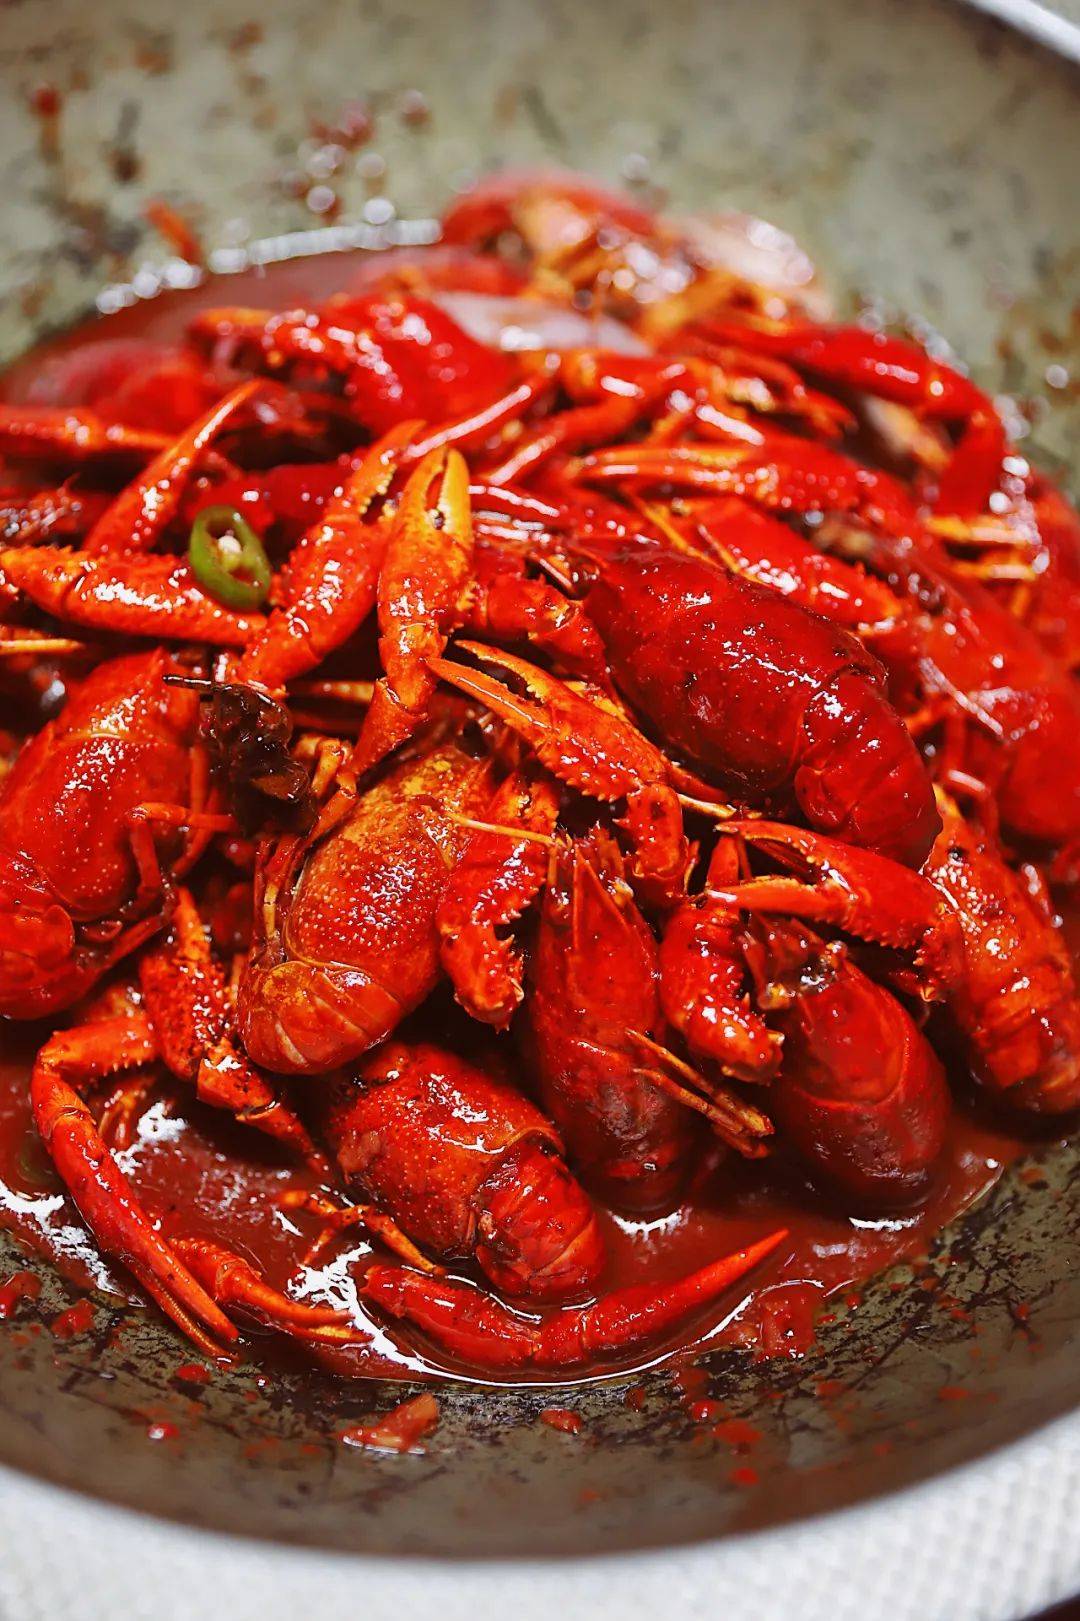 垄断小龙虾界7年的大佬新品一只13斤还是福州人最爱的红糟味